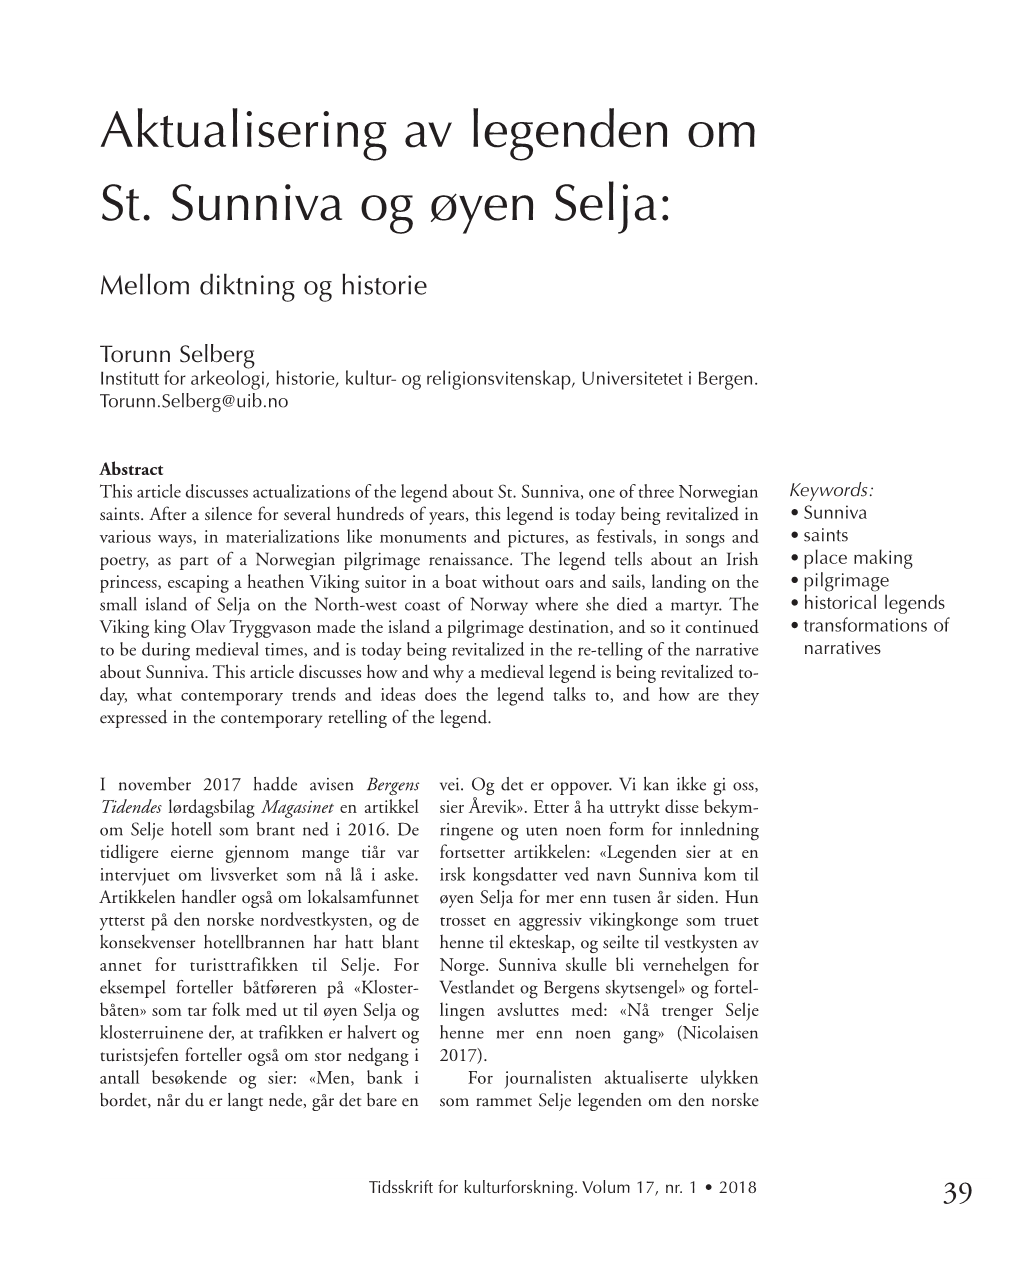 Aktualisering Av Legenden Om St. Sunniva Og Øyen Selja